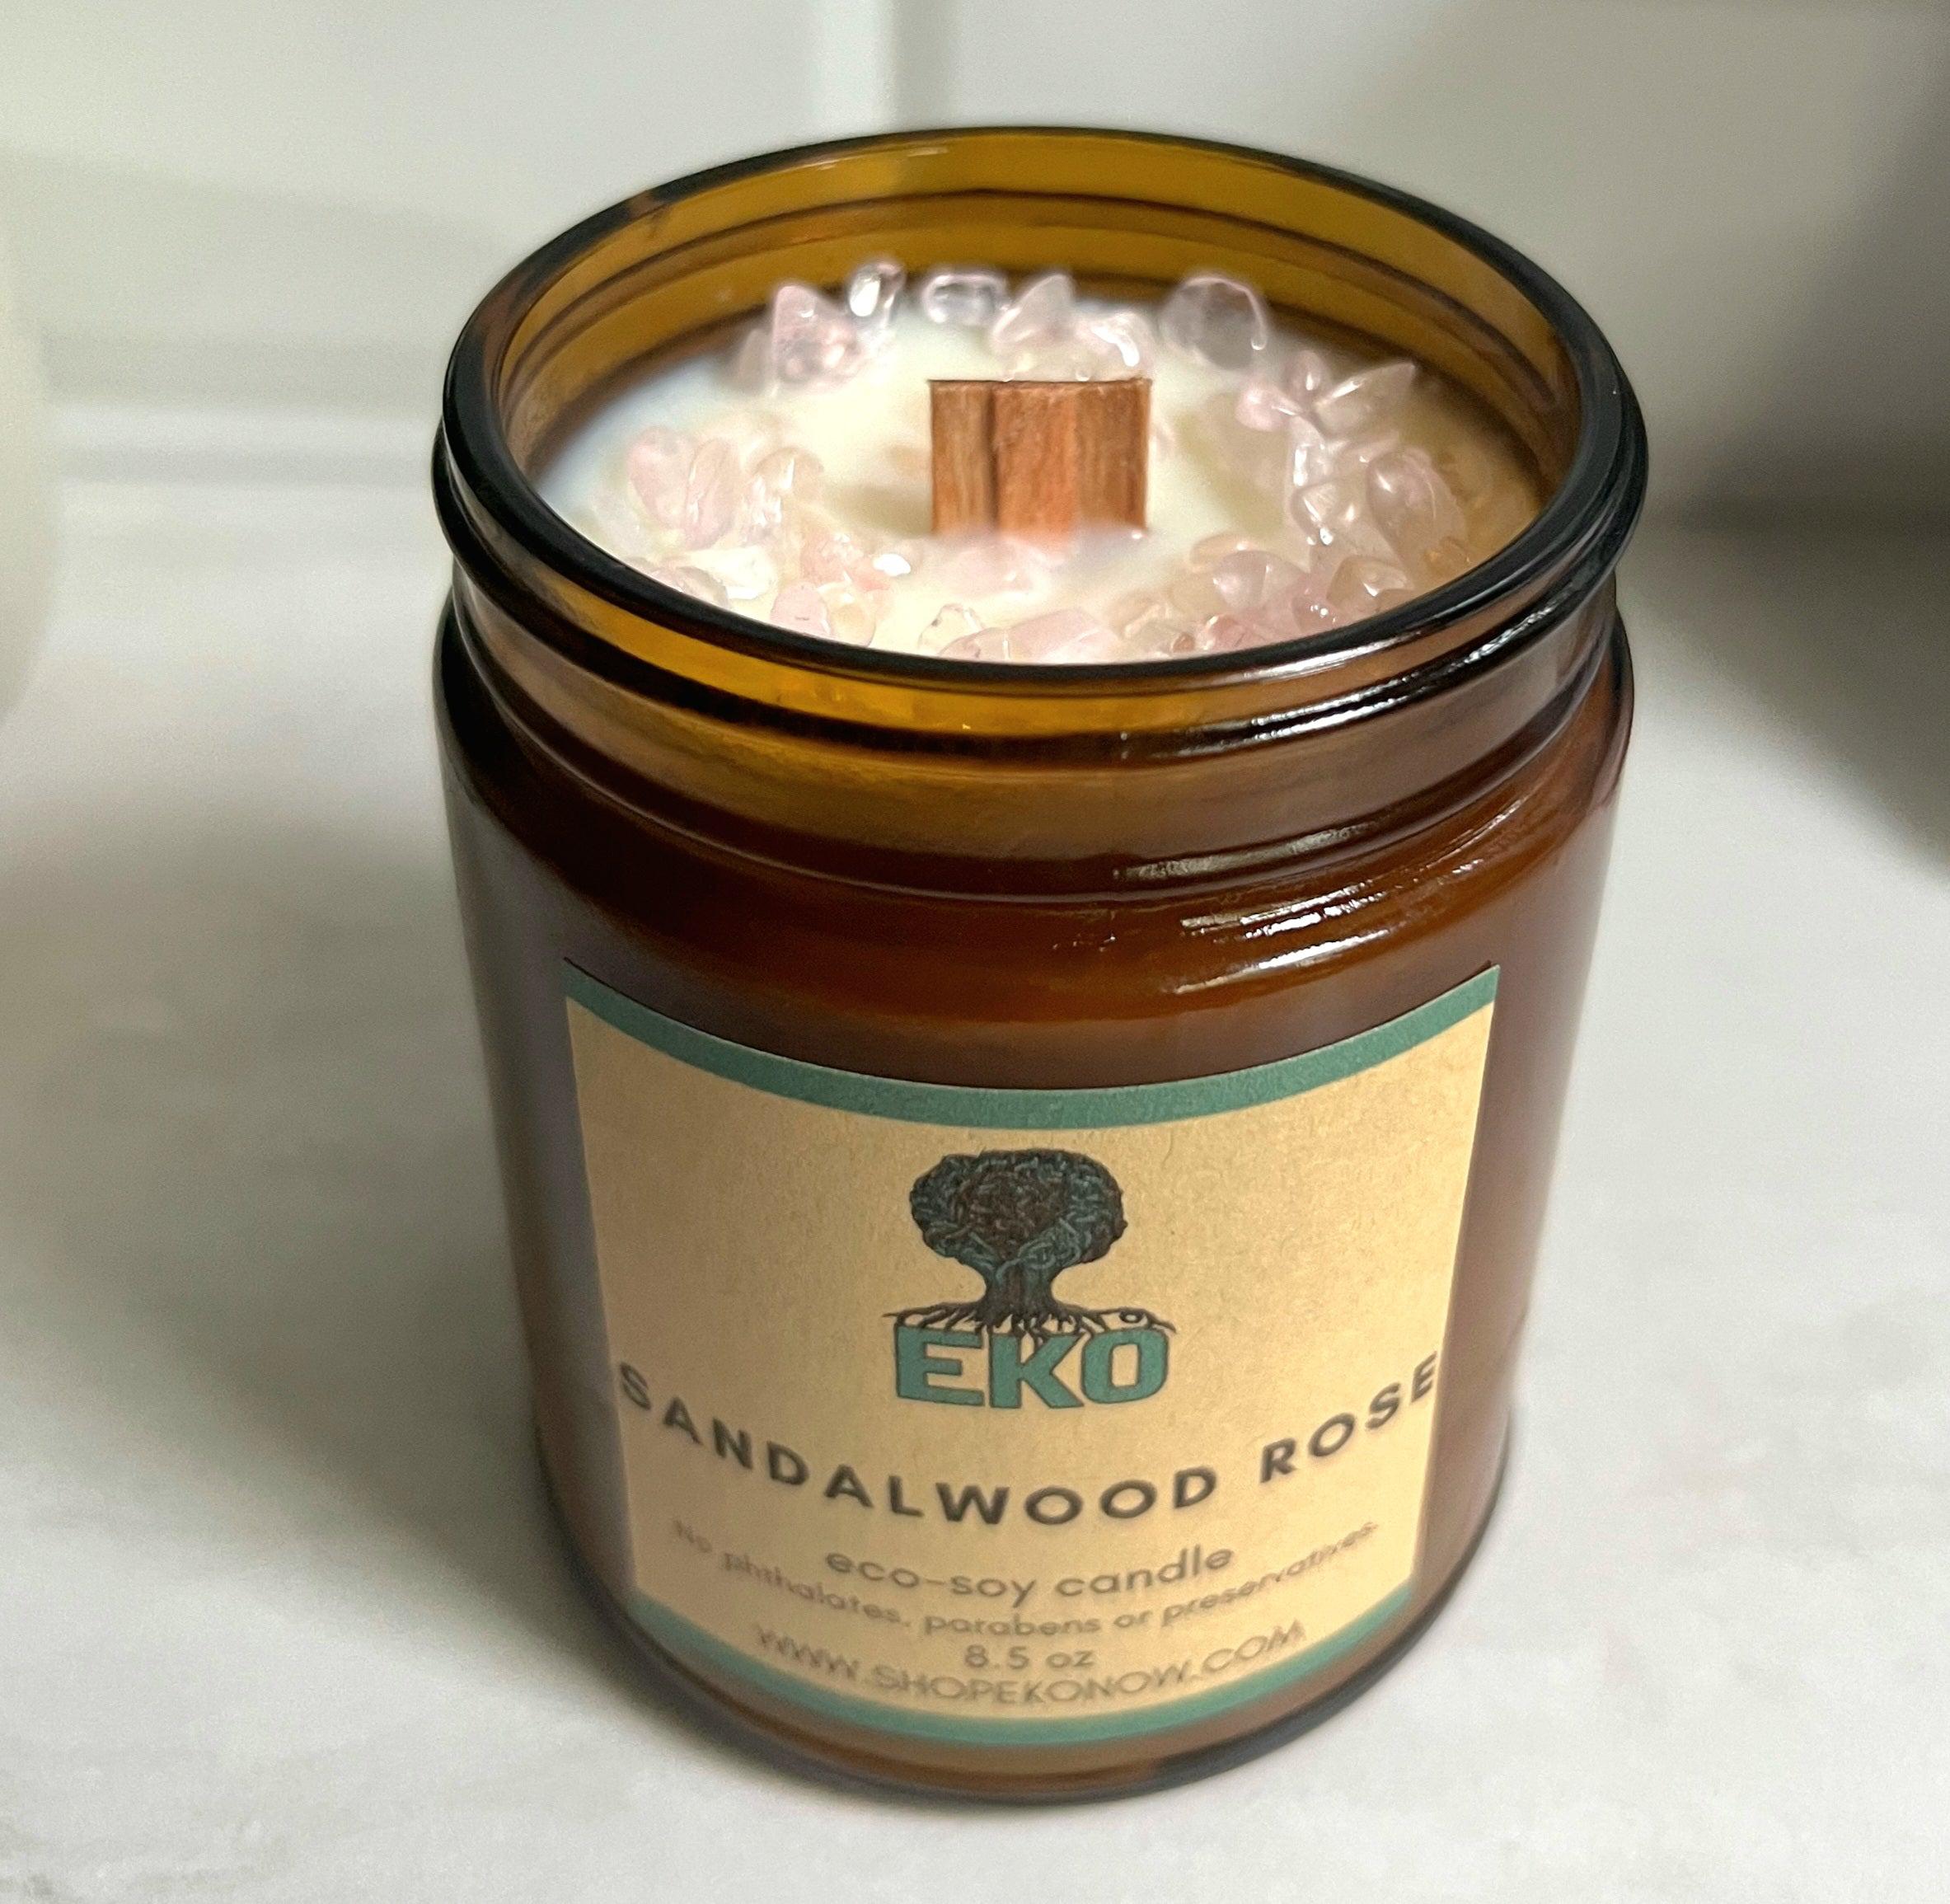 Sandalwood Rose - Rose Quartz Gemstone Candle